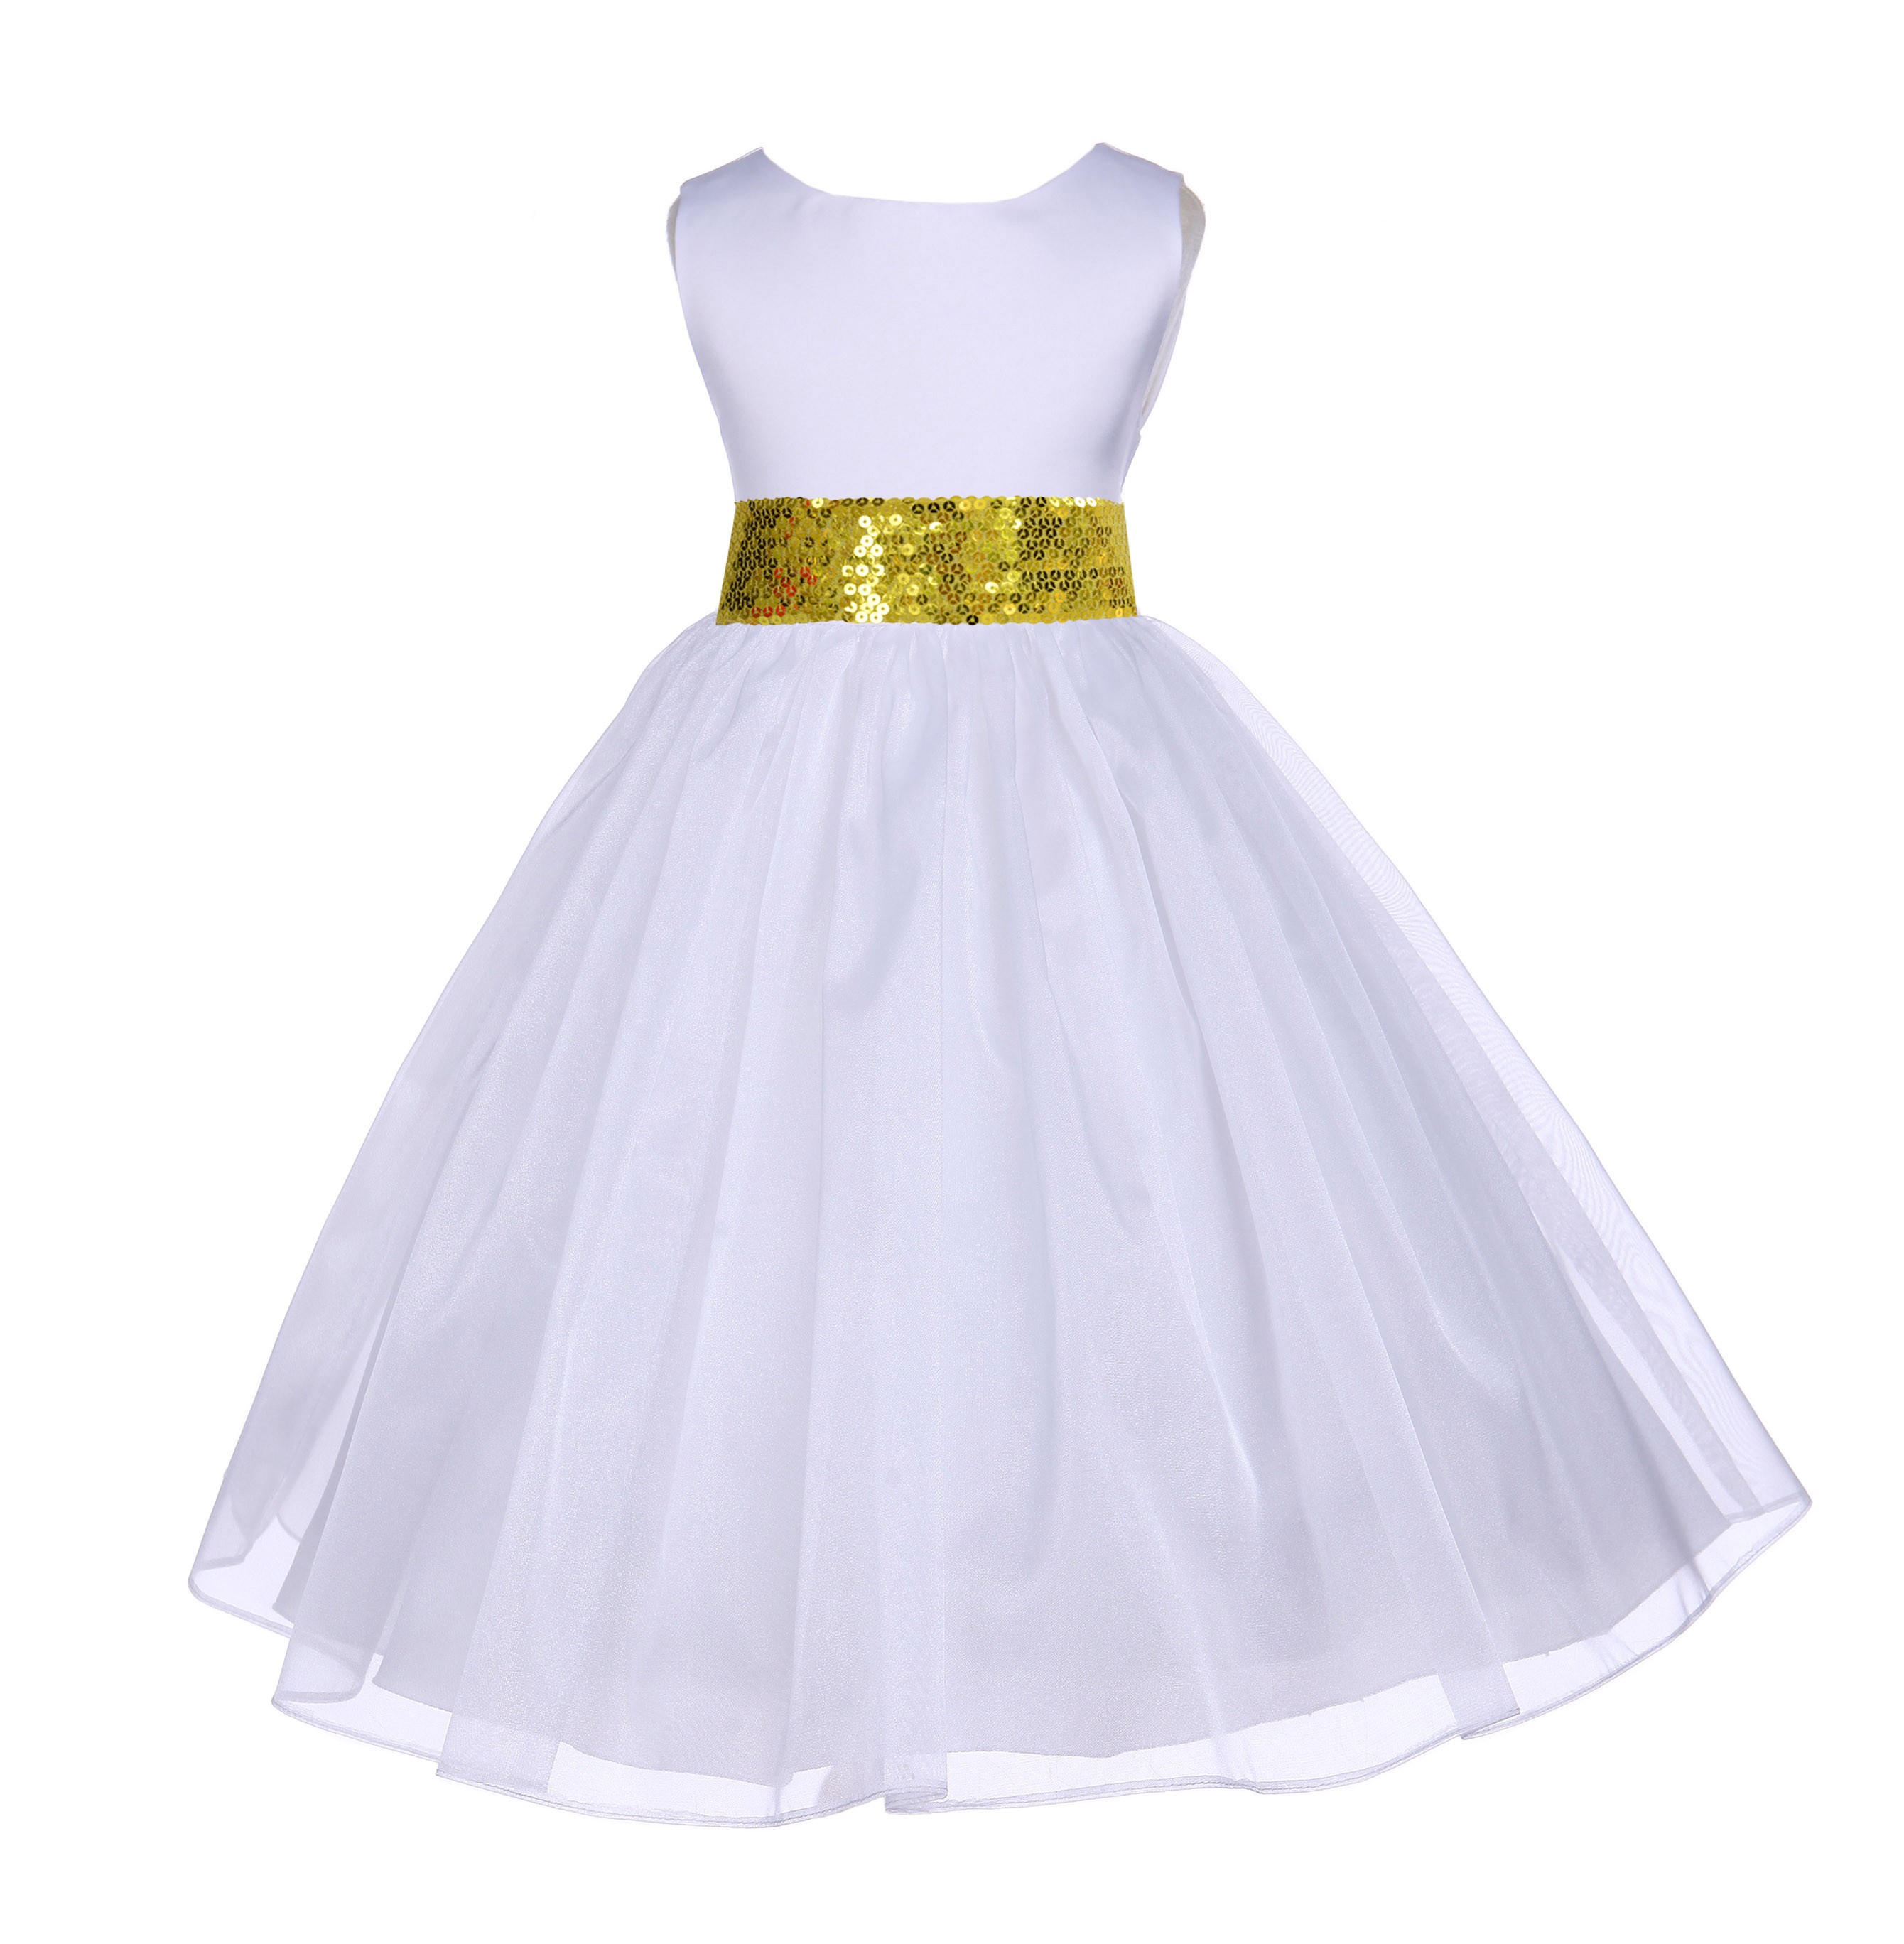 White Shimmering Organza Sunbeam Sequin Sash Flower Girl Dress 841mh